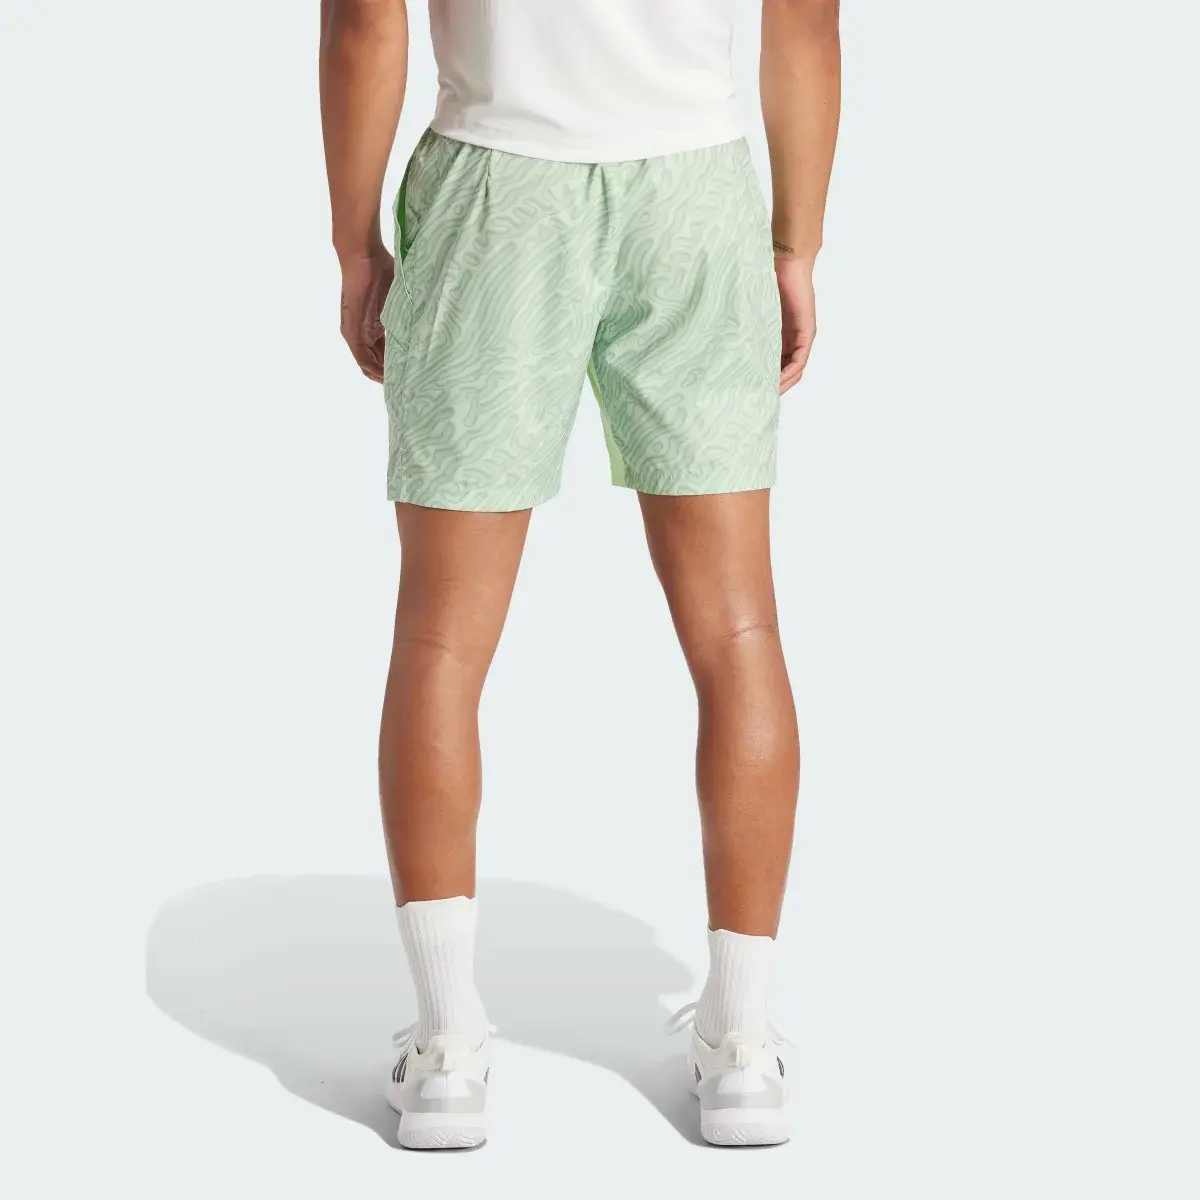 Adidas Tennis HEAT.RDY Pro Printed Ergo 7-Inch Shorts. 2